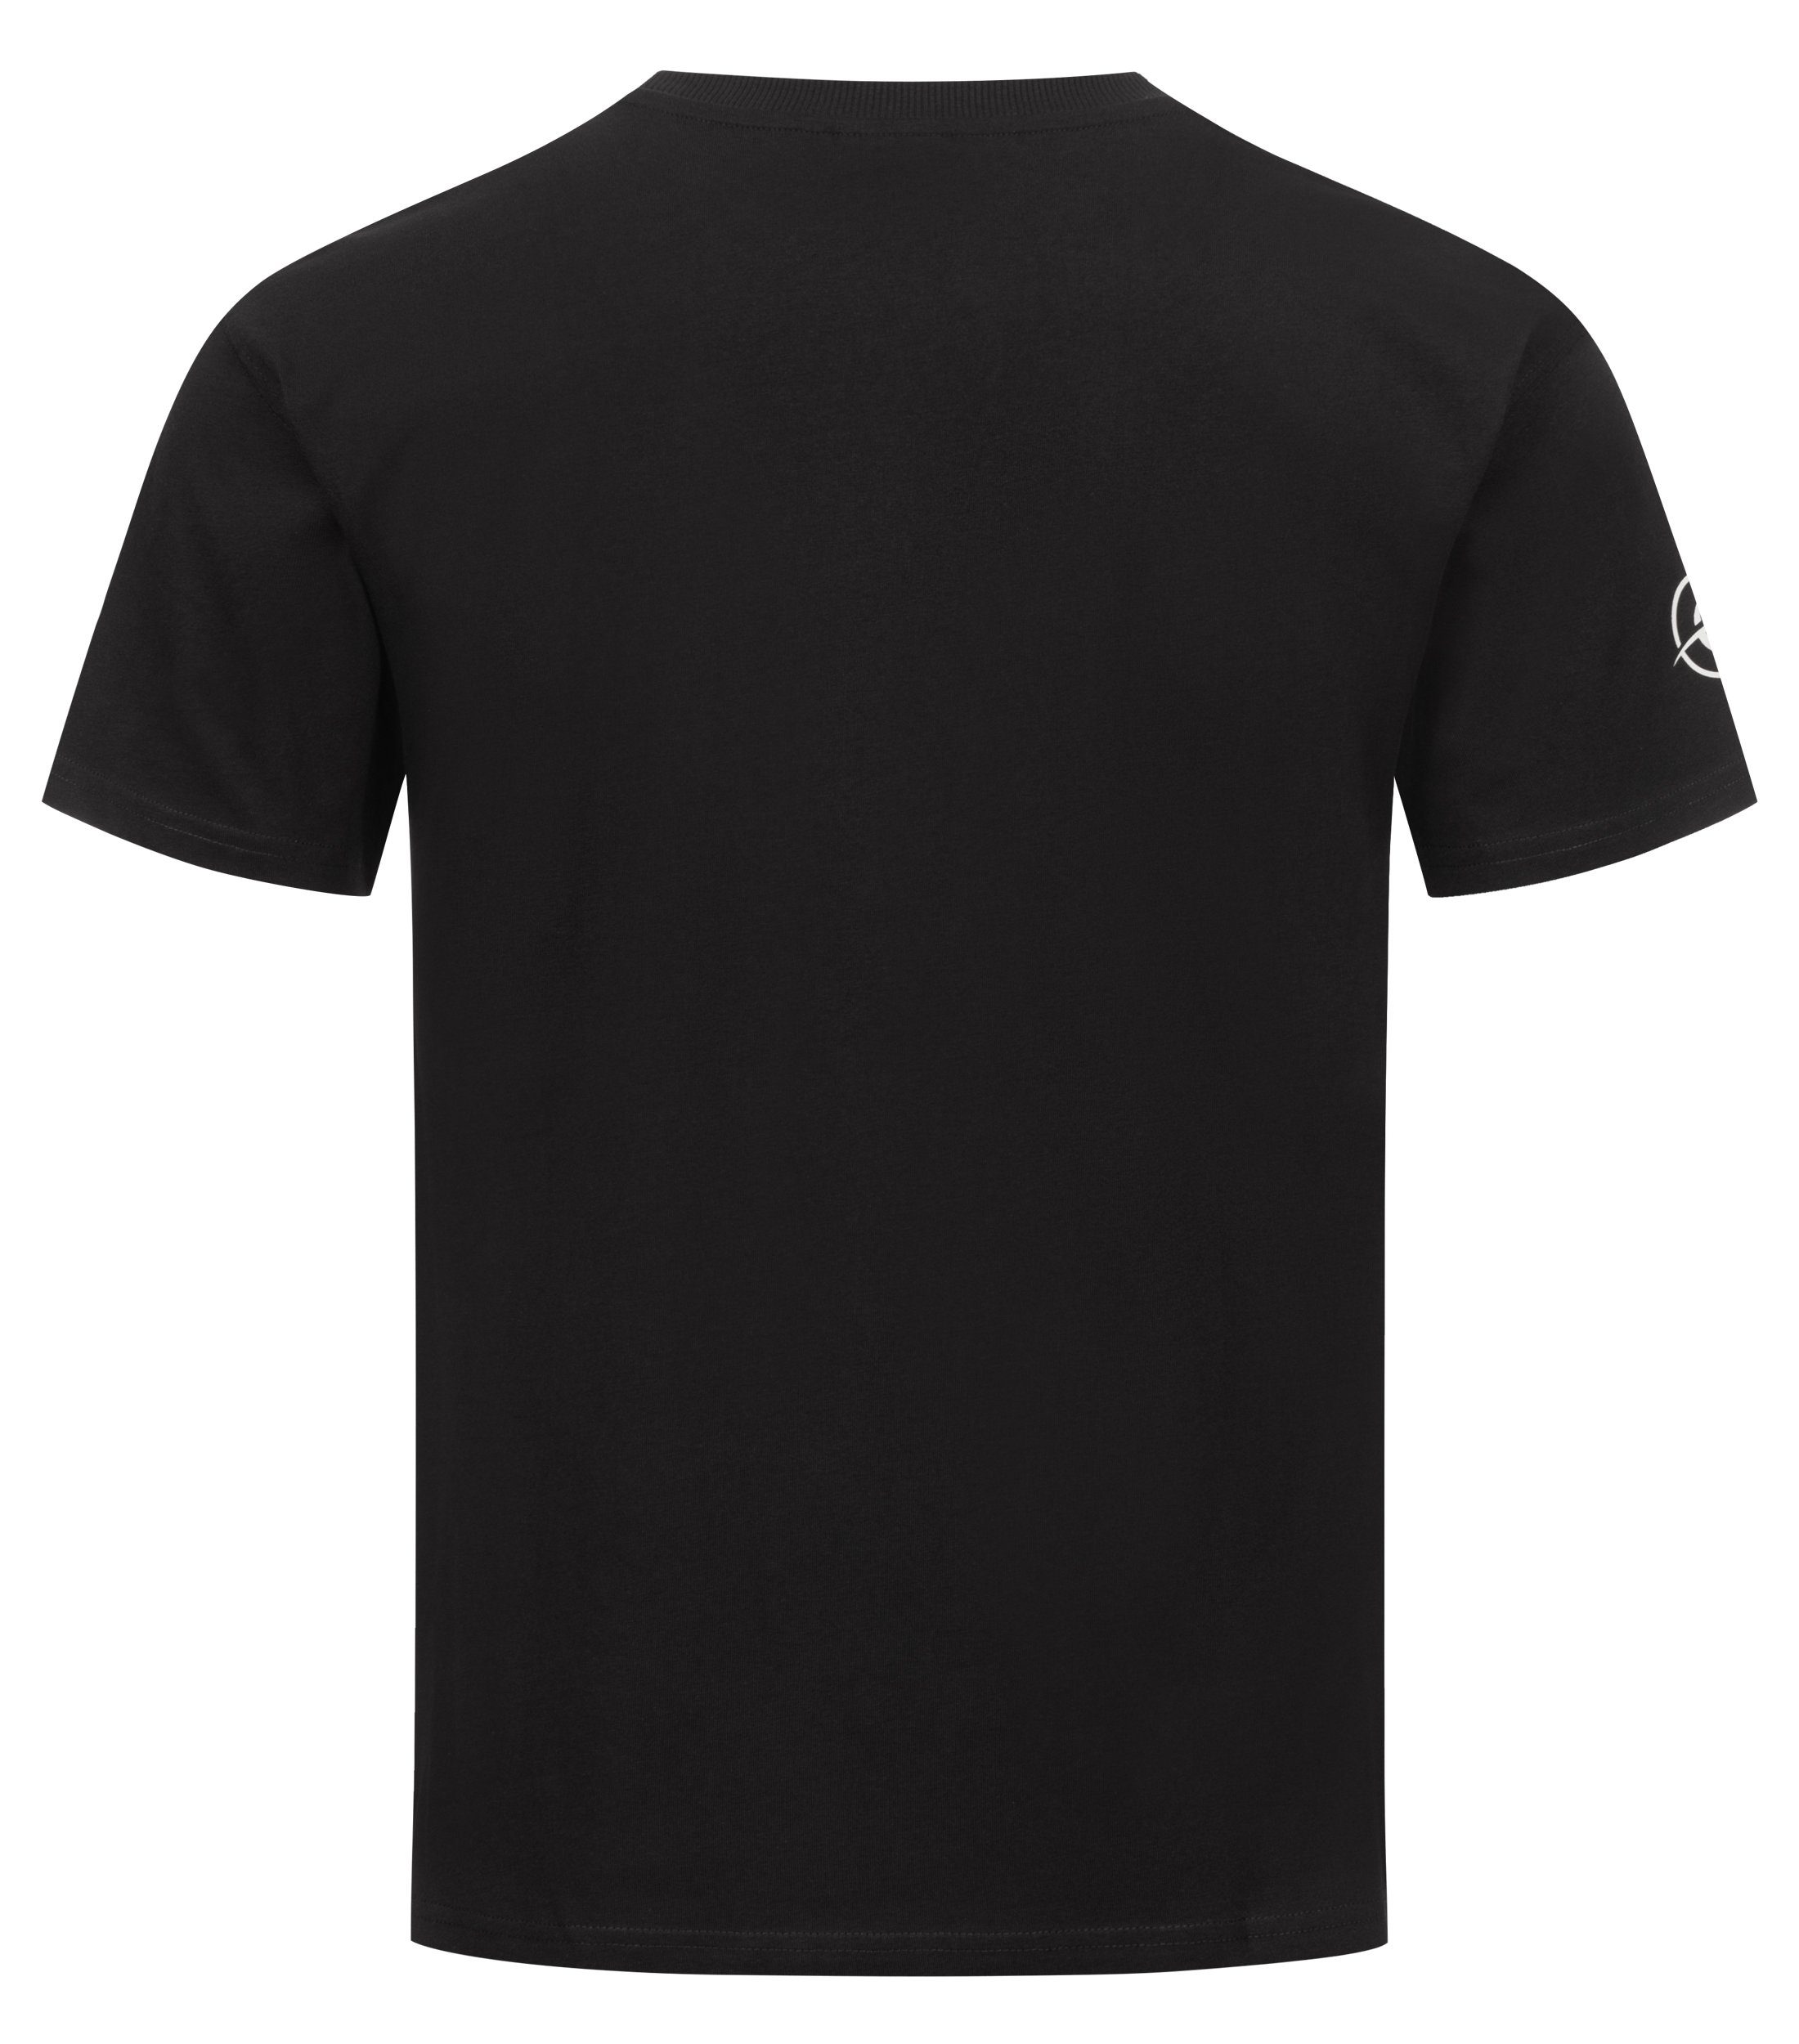 Chilled Mercury Rundhals Baumwolle Shirt/ T-Shirt Freizeit Brusttasche mit Schwarz